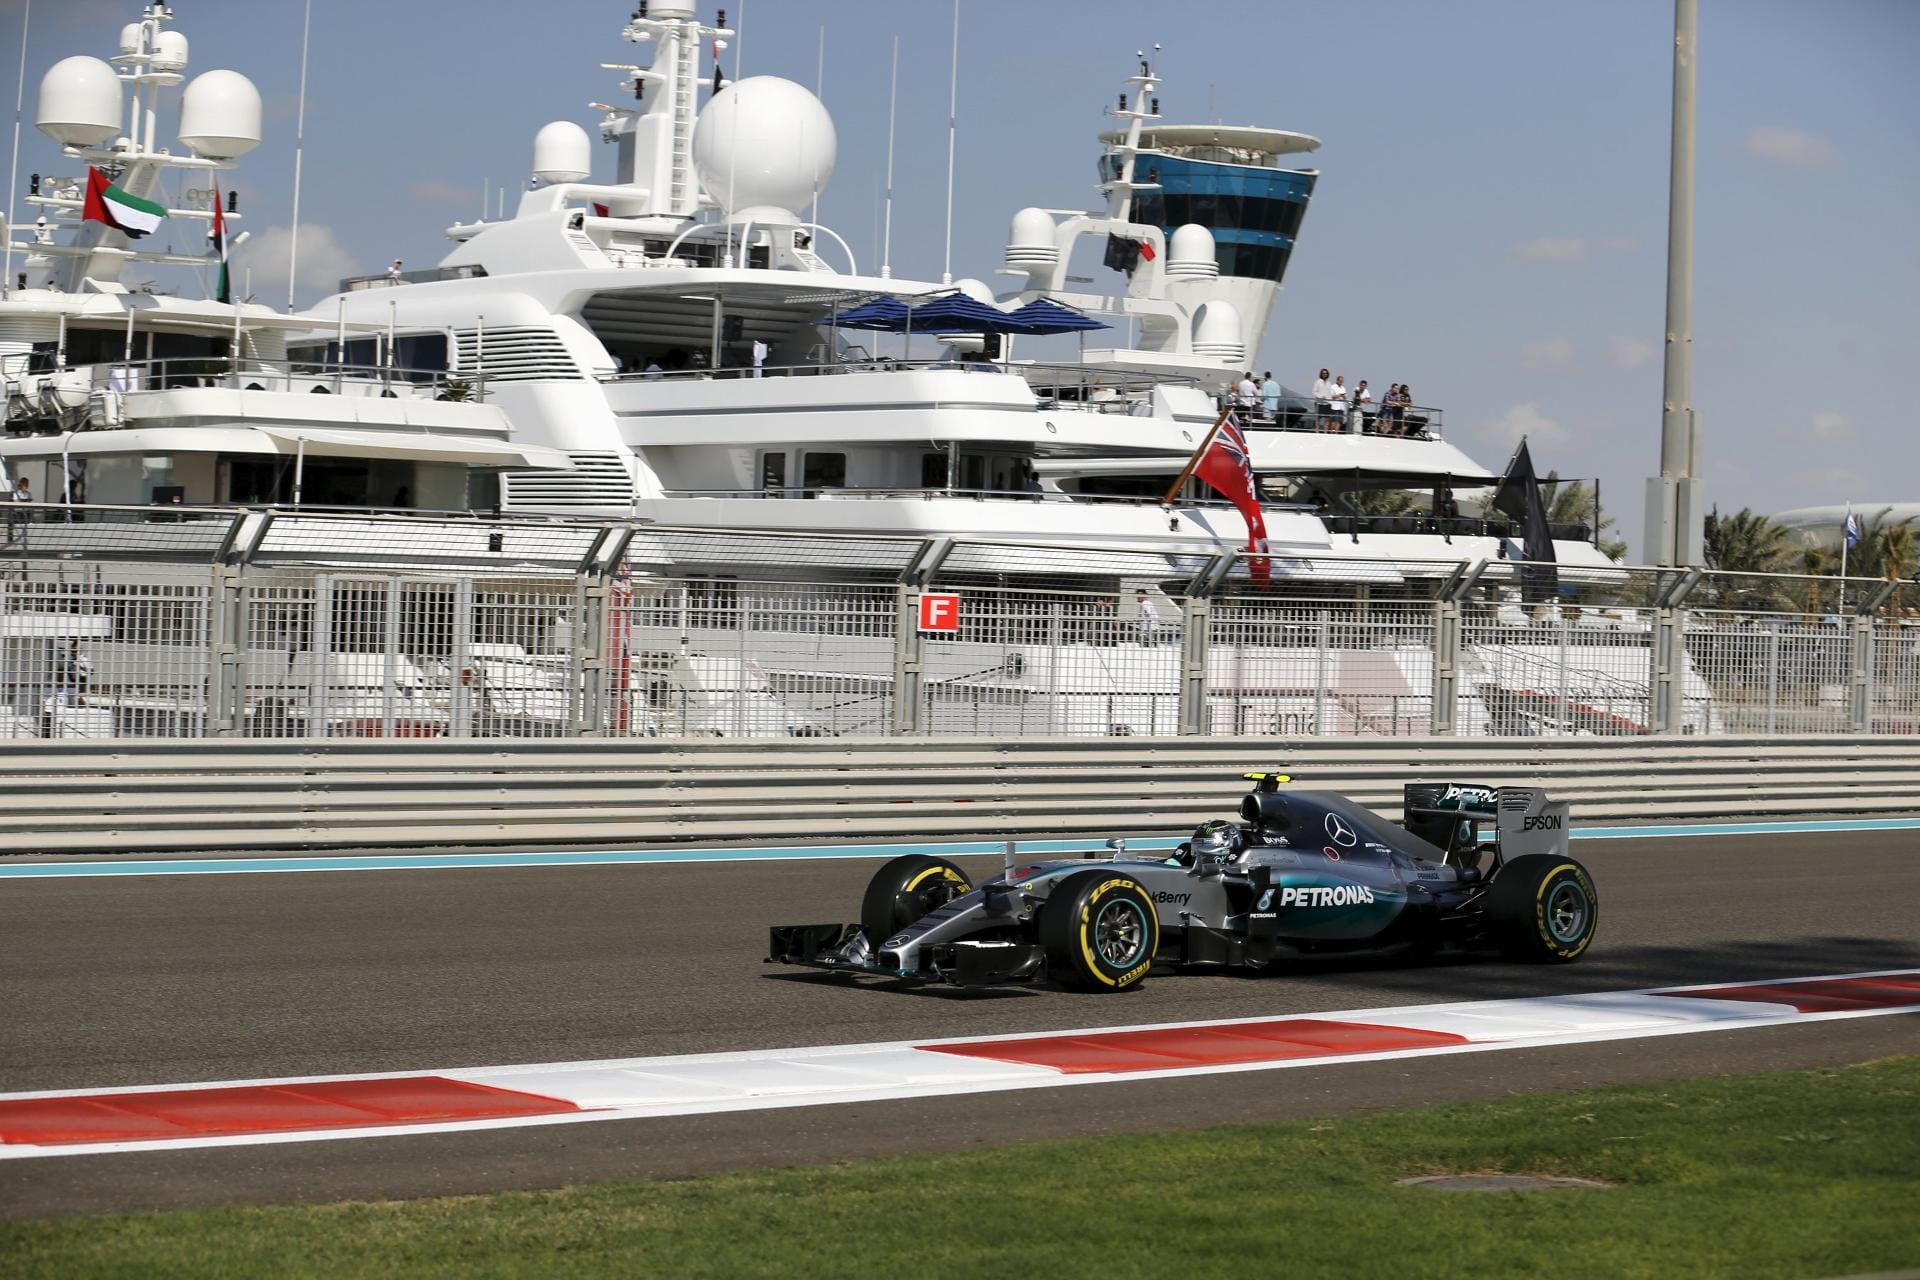 ... doch die Tagesbestzeit fährt Mercedes-Kollege Nico Rosberg. Der deutsche Pilot rast vor der imposanten Hafen-Kulisse im zweiten Freien Training auf Platz eins. "Ich bin jetzt einfach schneller. Punkt", sagt Rosberg.